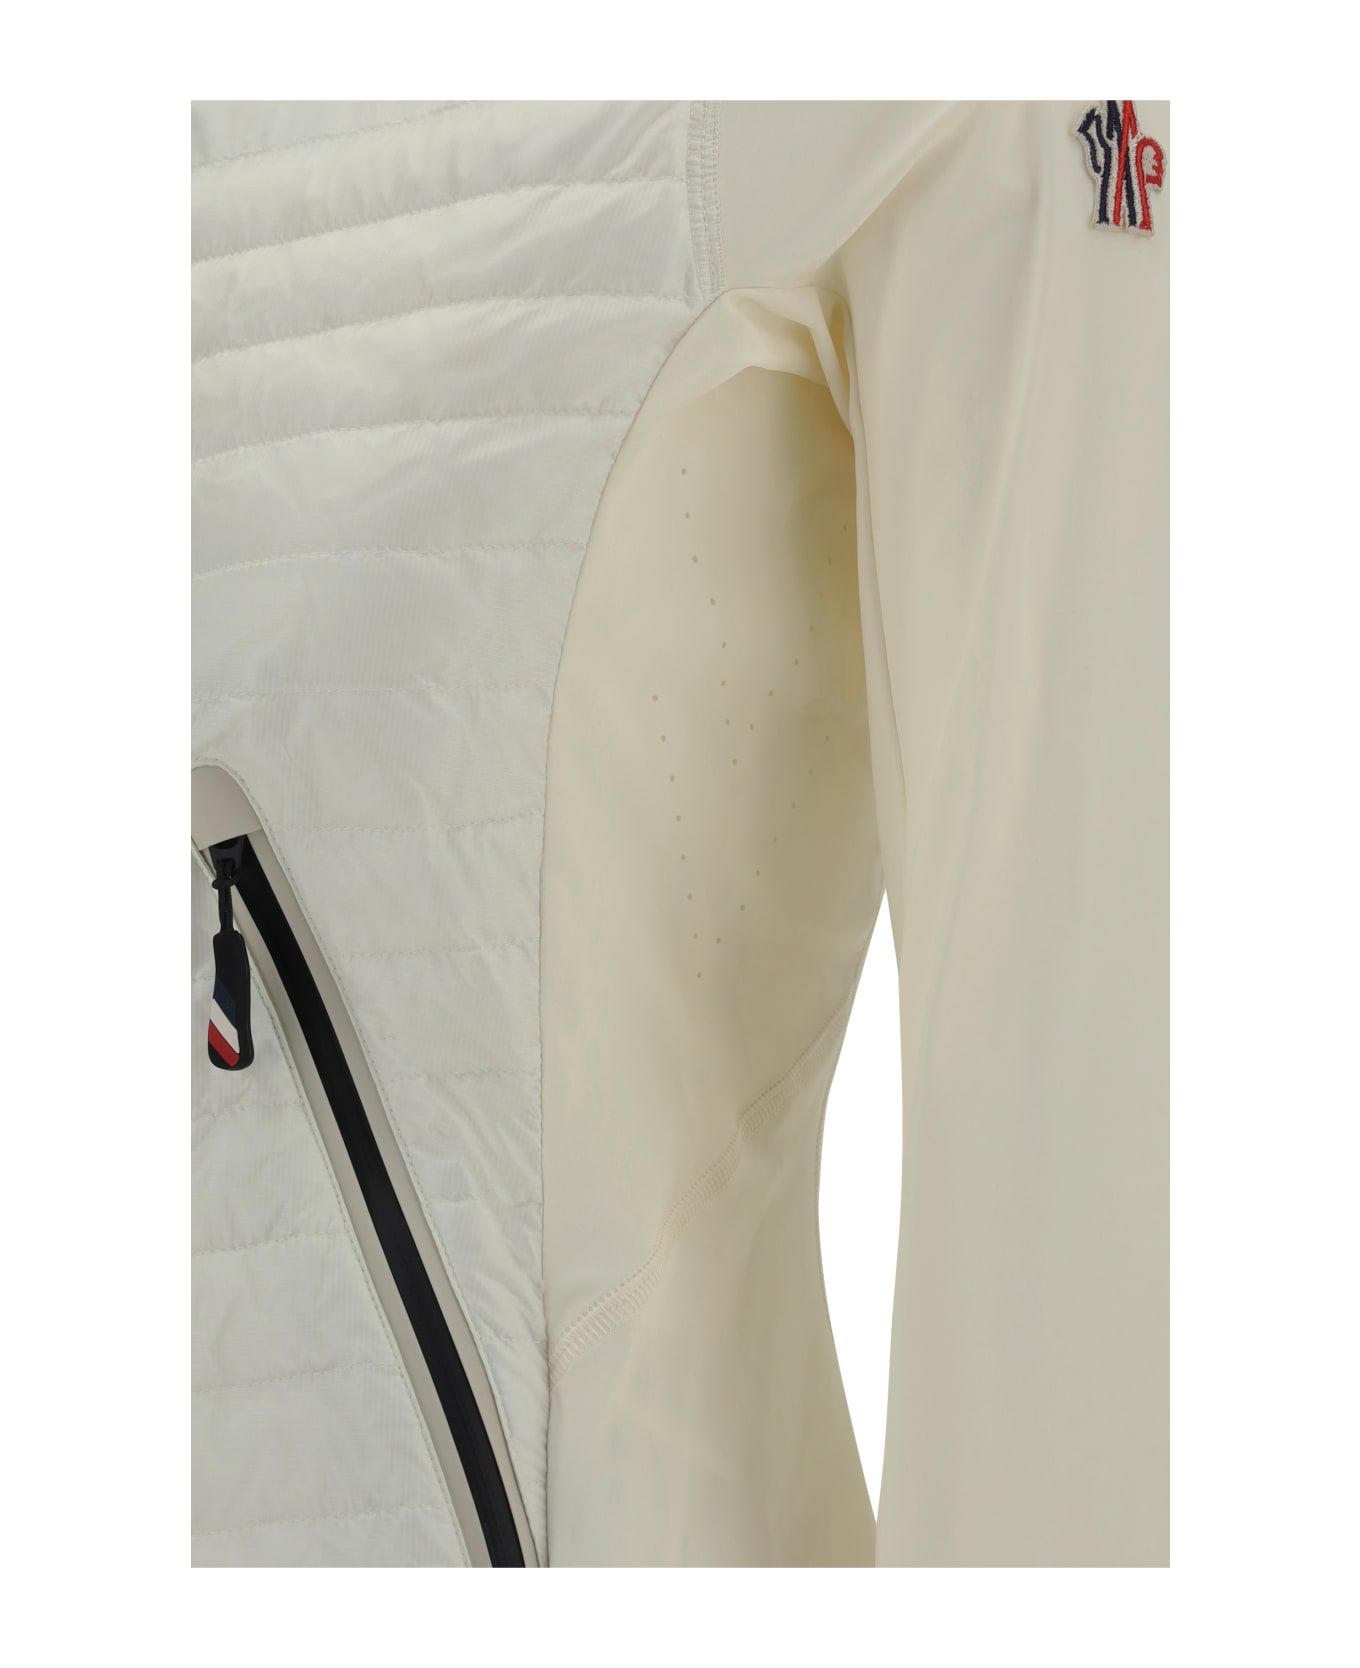 Moncler Grenoble Jacket - WHITE